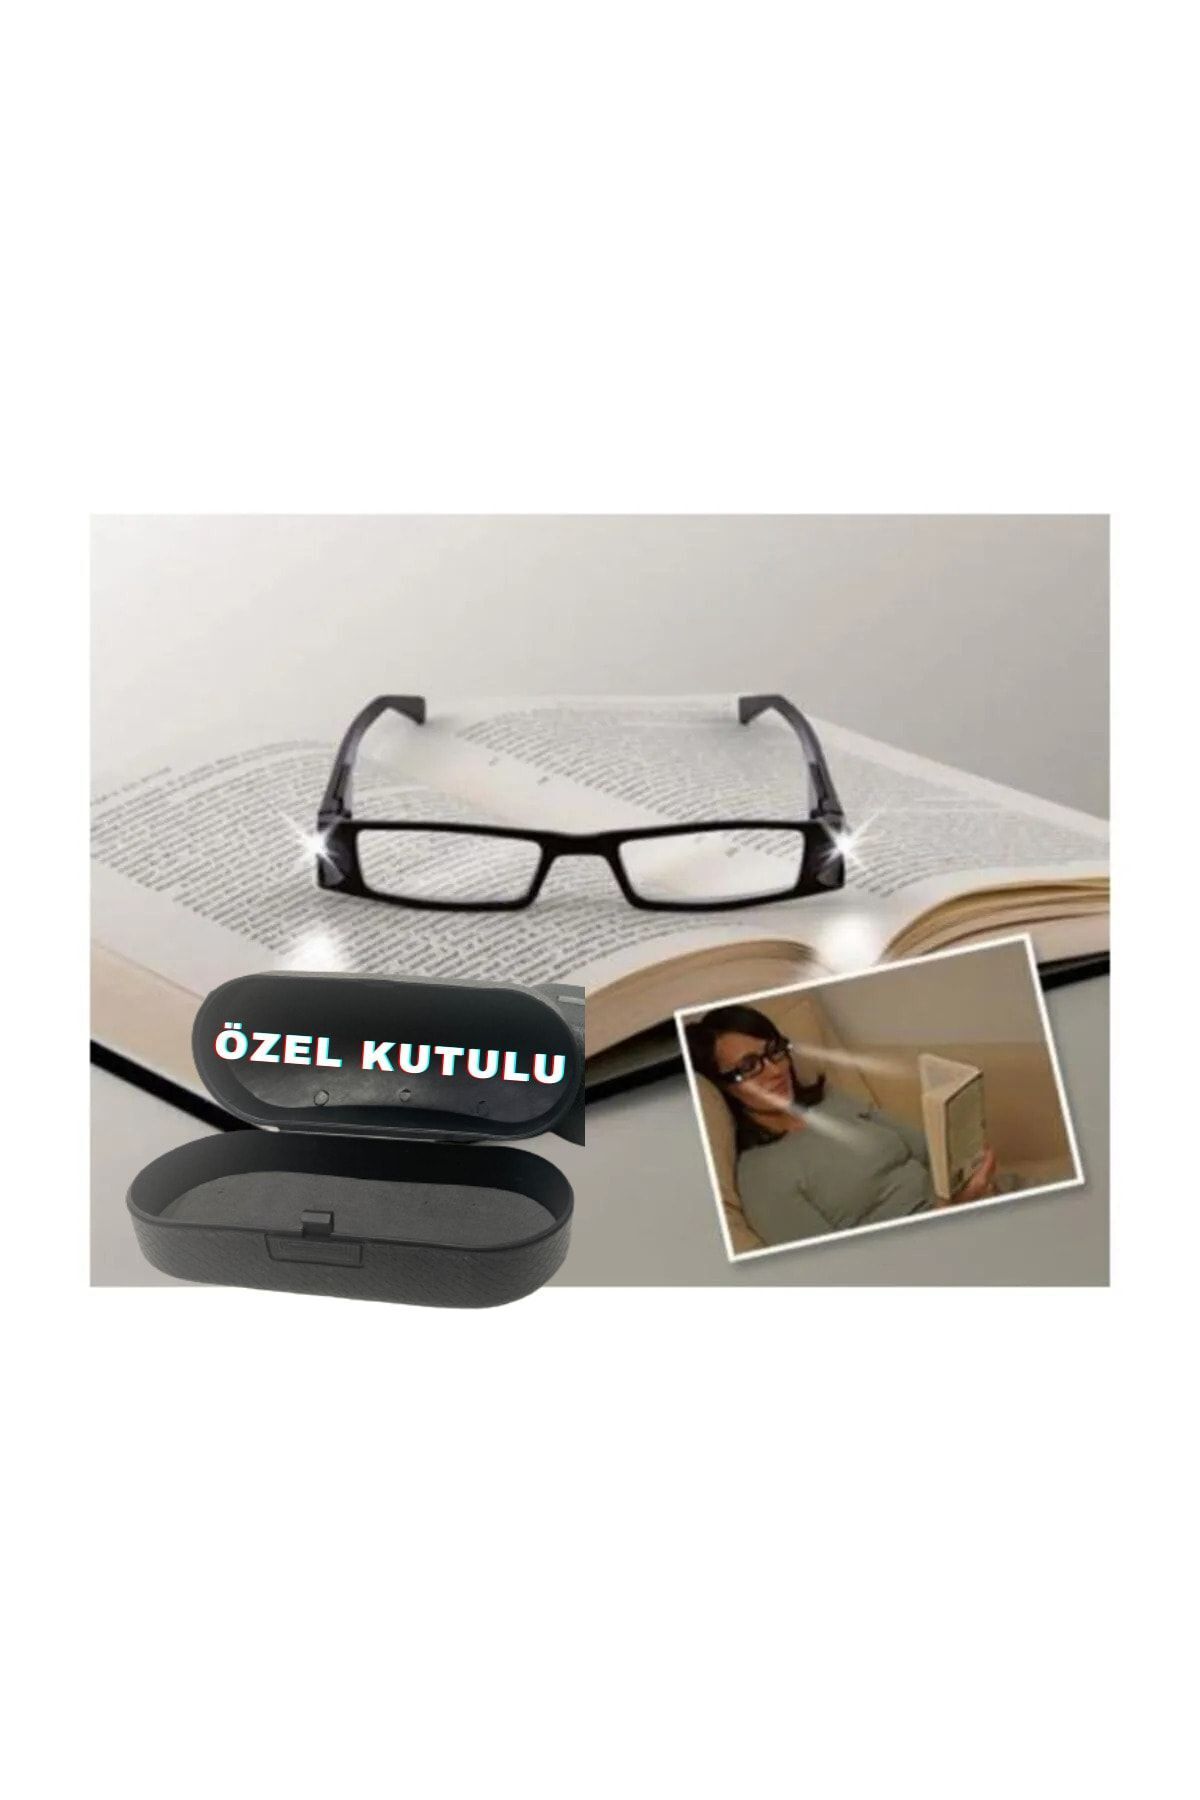 Cmt Yayınları Led Işıklı Camsız Kitap Okuma Gözlüğü foni0653